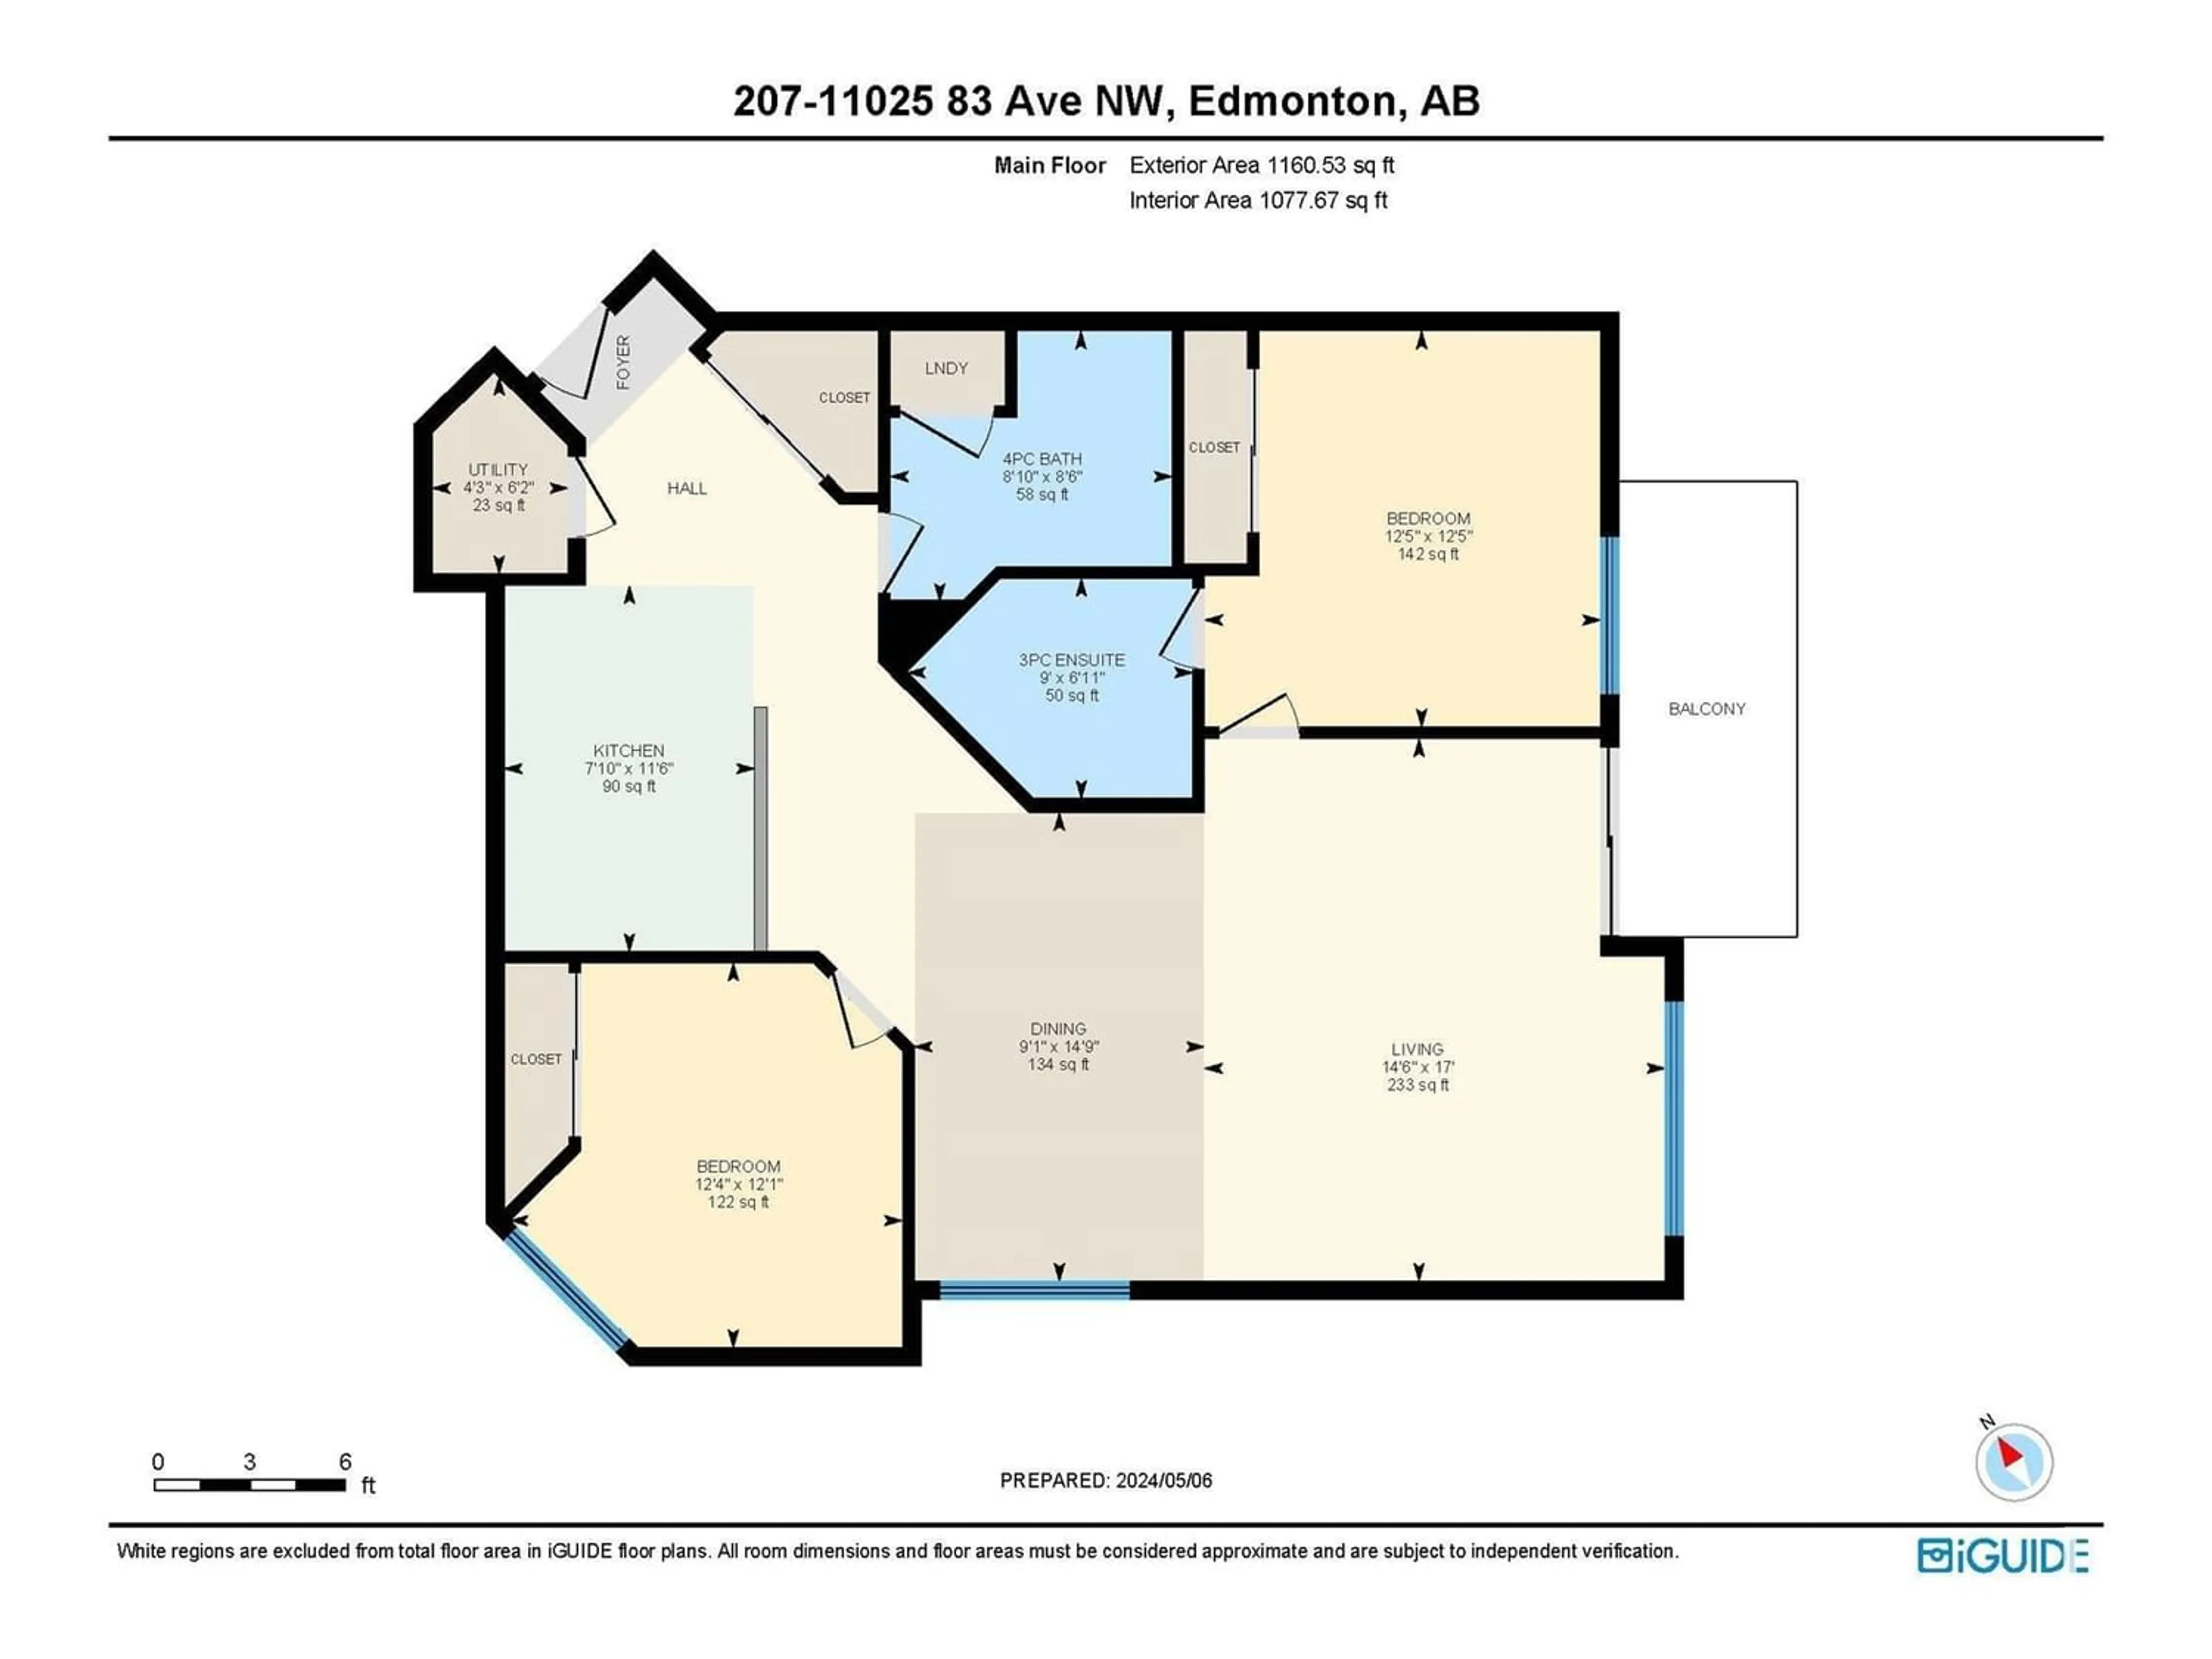 Floor plan for #207 11025 83 AV NW, Edmonton Alberta T6G2V5